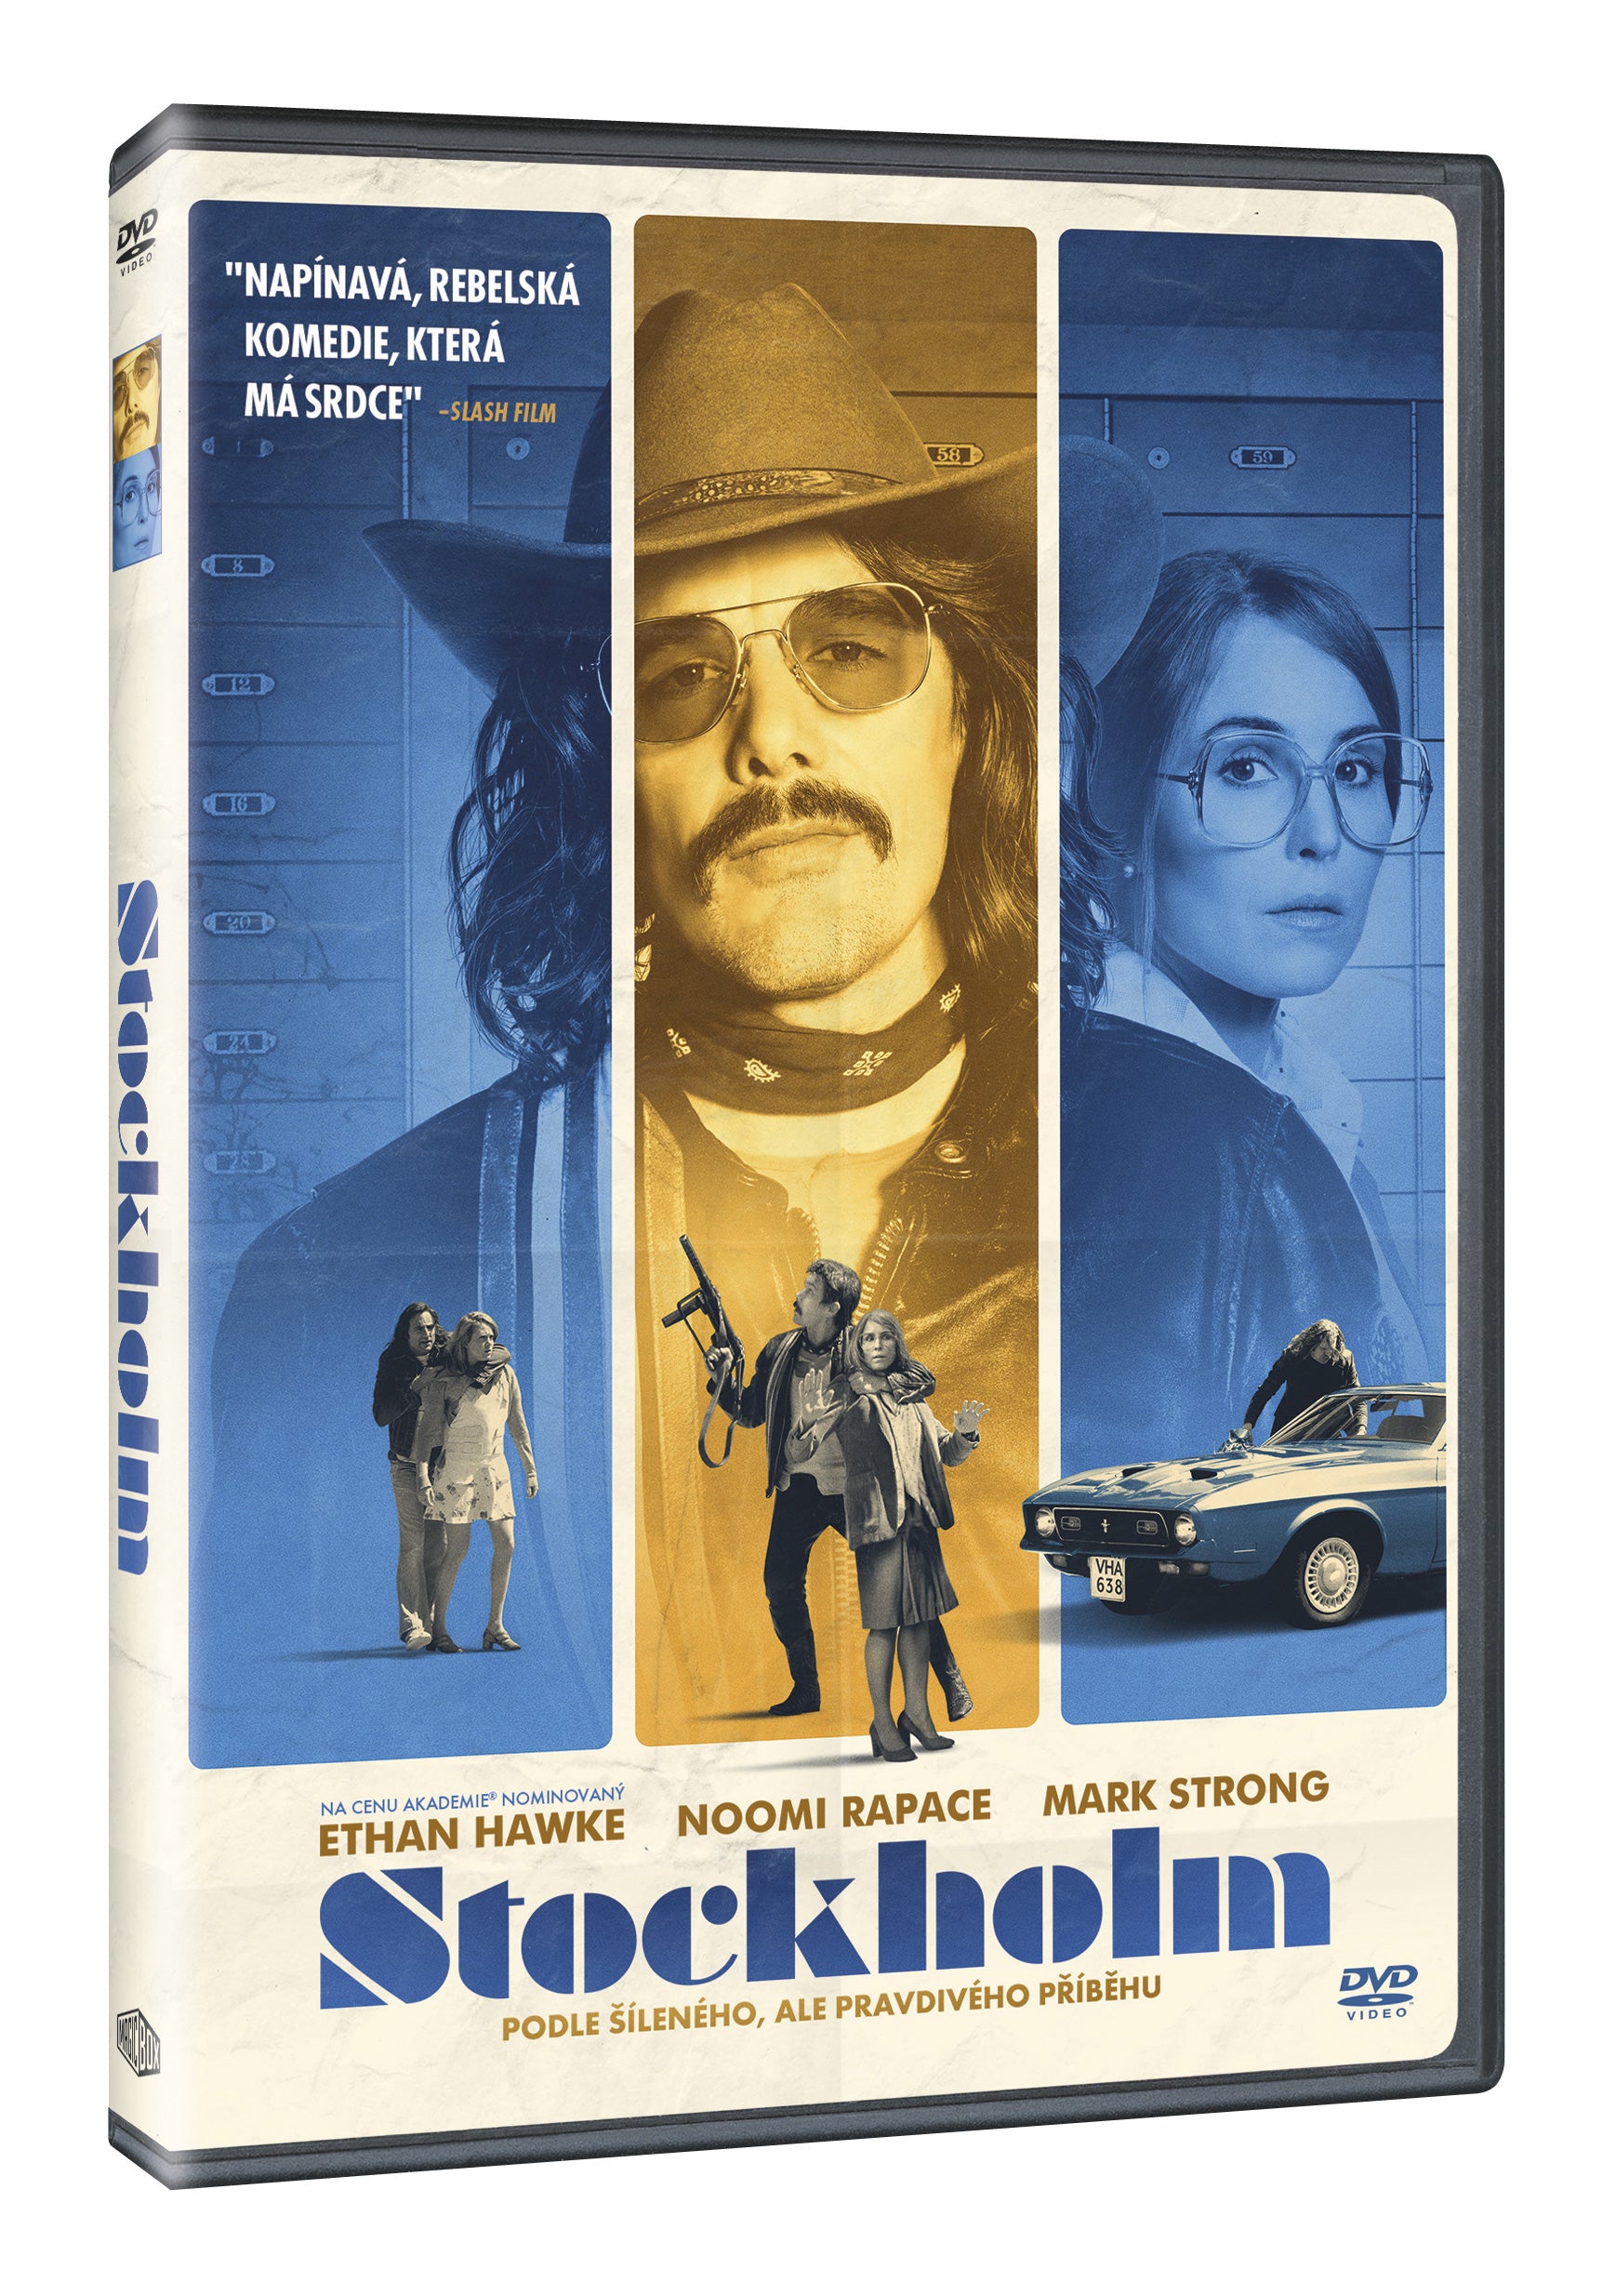 Stockholm DVD / Stockholm